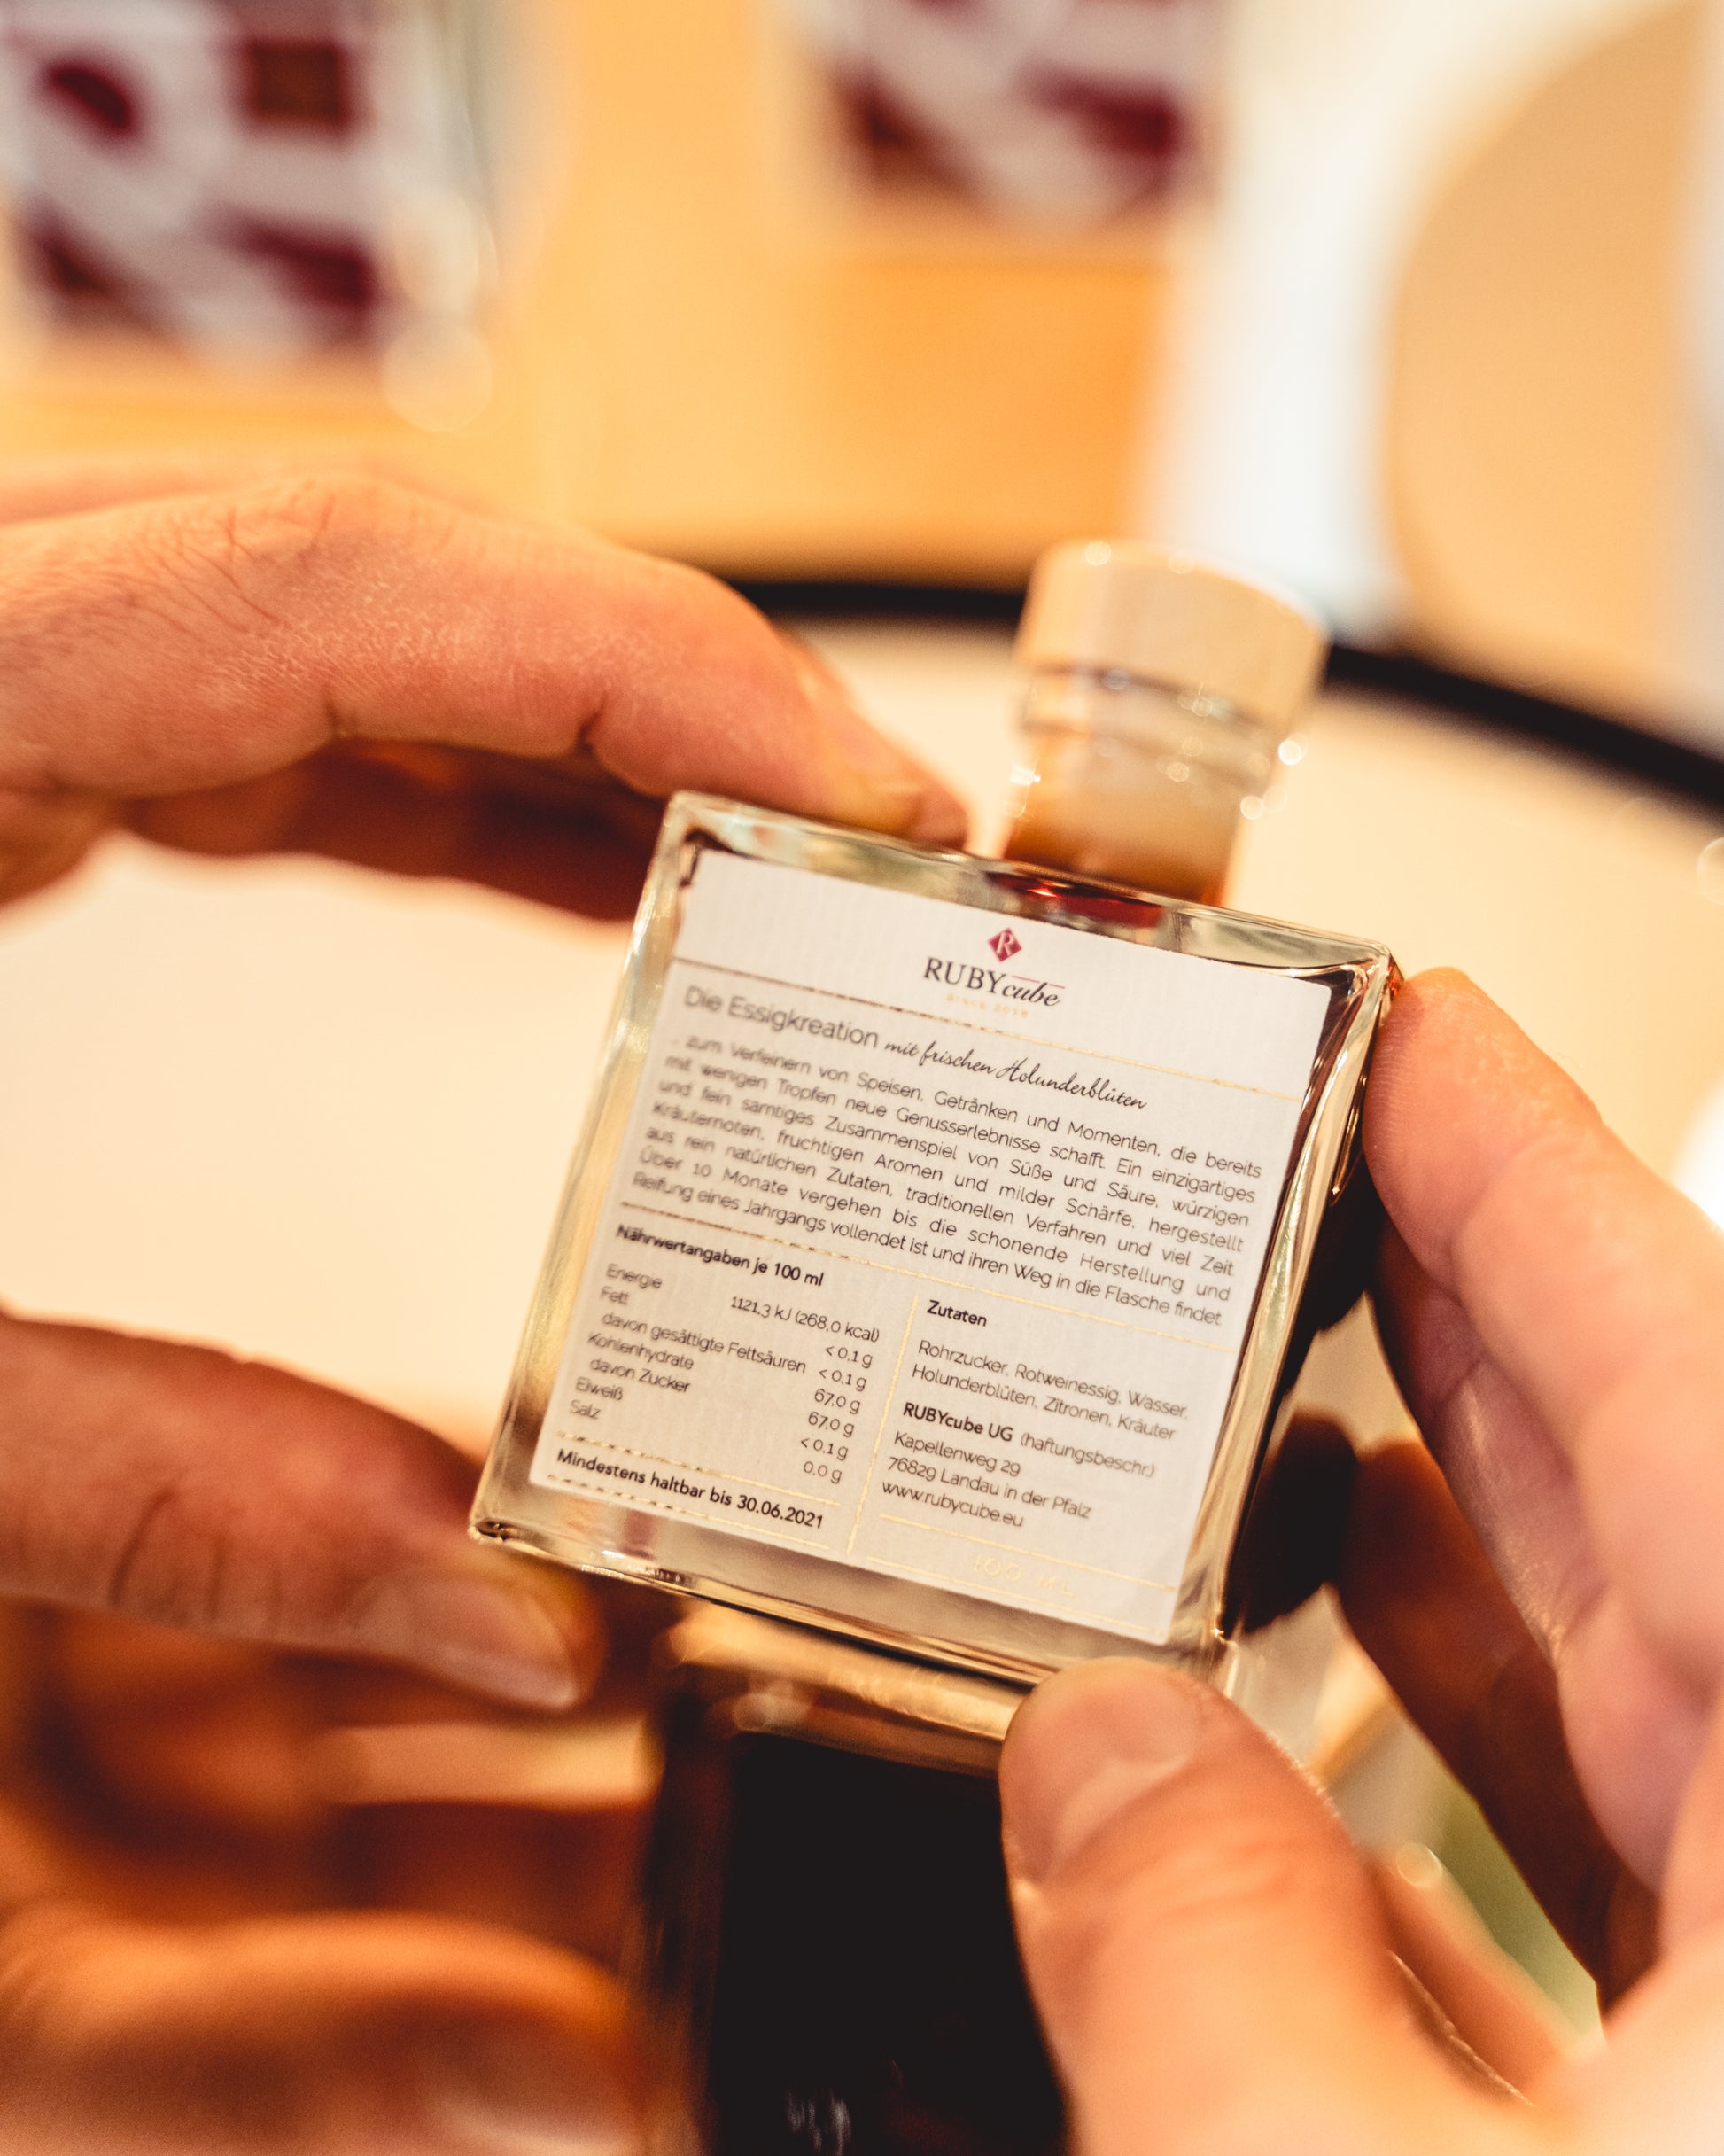 Rubycube Flasche wird in der Hand gehalten und von hinten auf dem Label die Inhaltsstoffe, Zutaten und Vision gezeigt